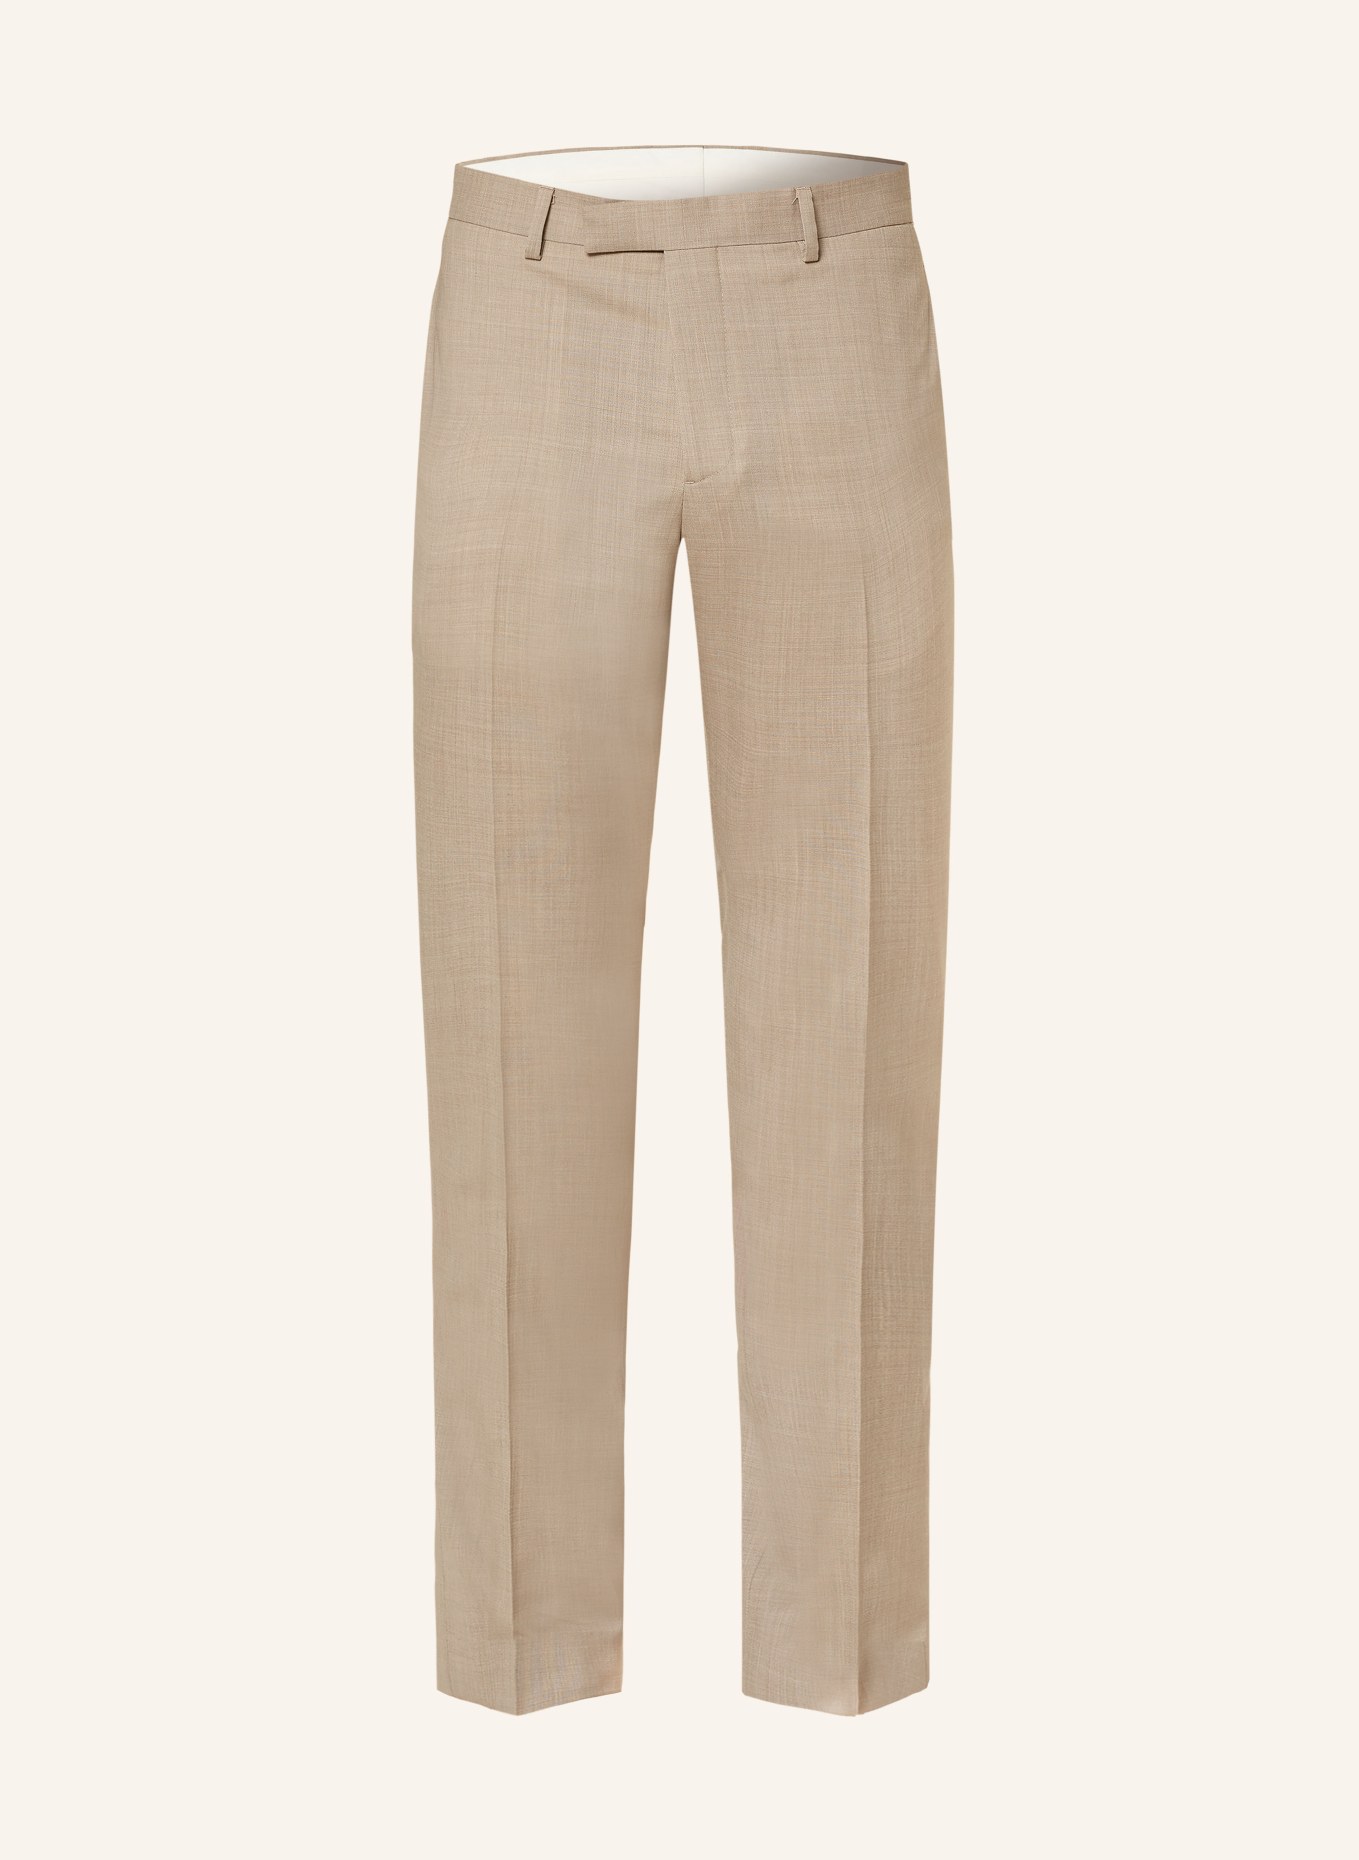 SANDRO Anzughose Slim Fit, Farbe: 72 TAUPE (Bild 1)